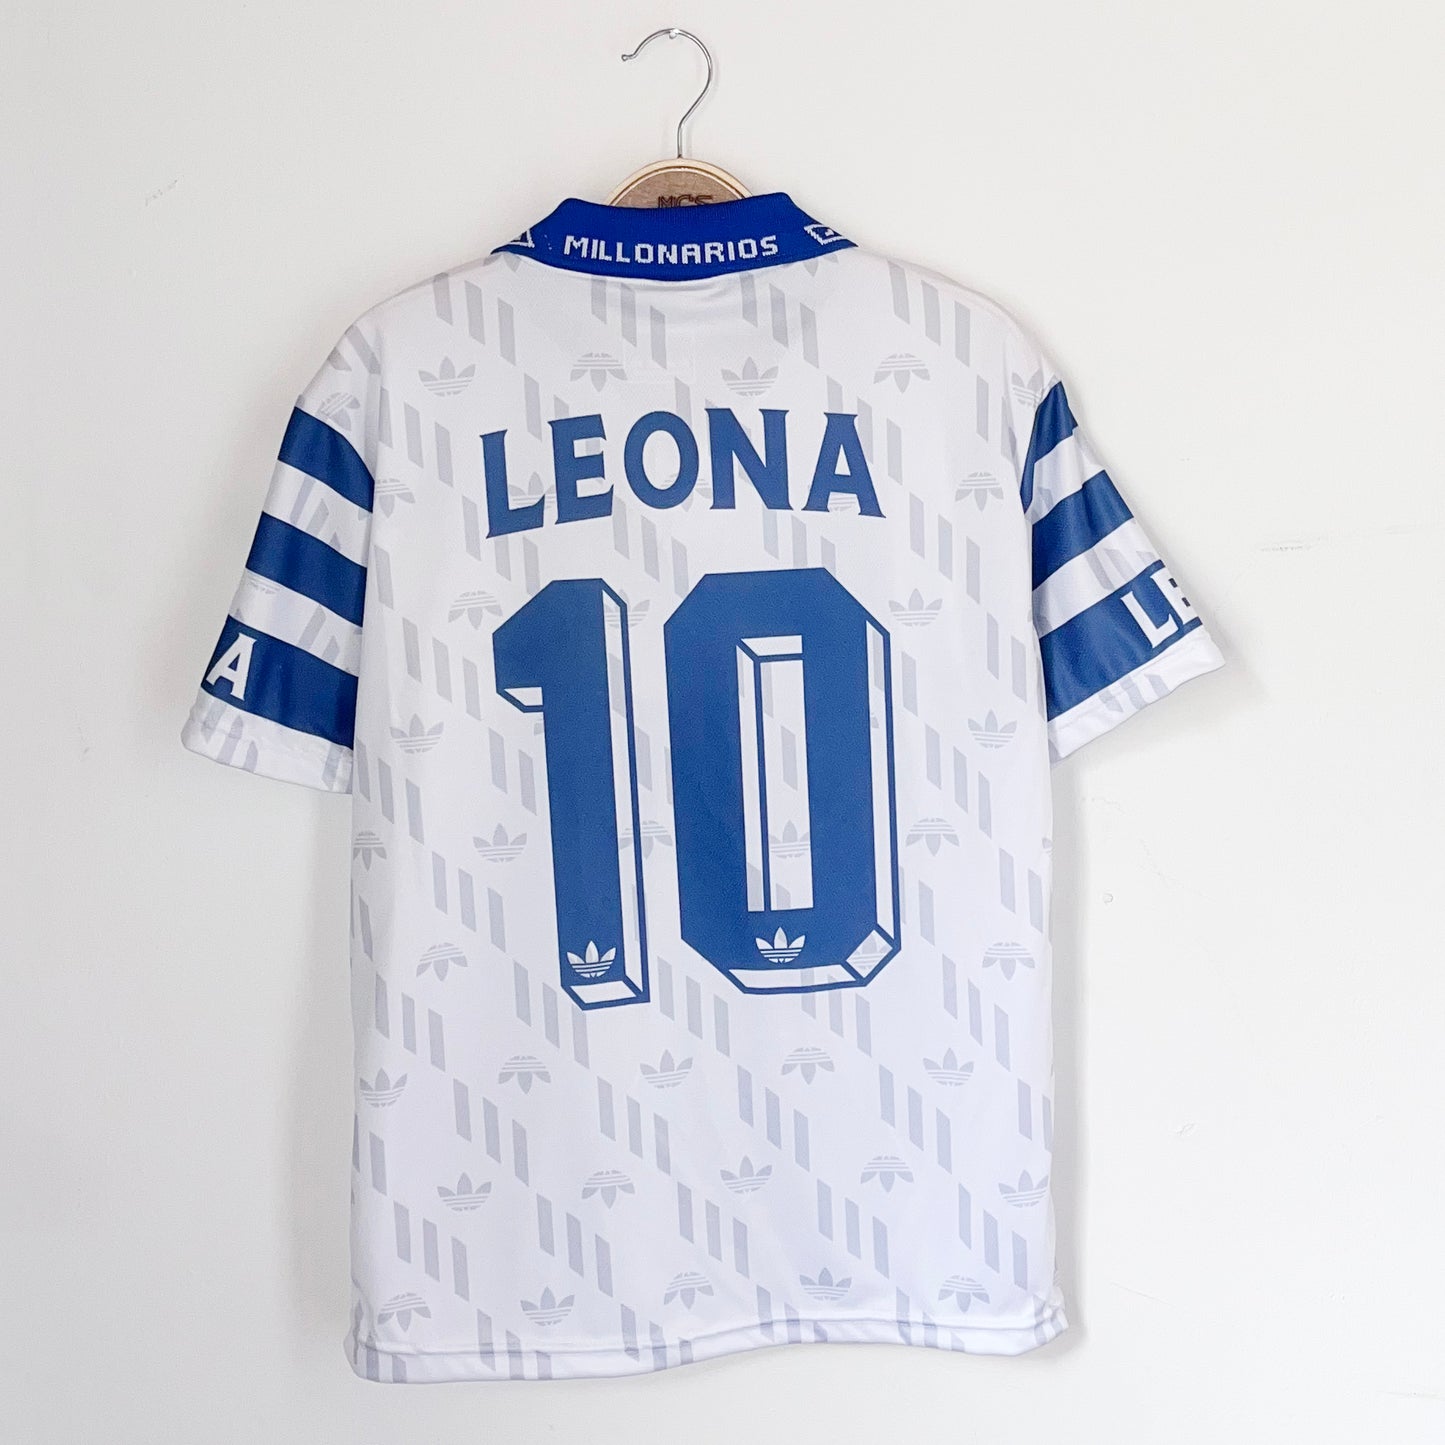 Retro Camiseta Millonarios Leona 1996 BLANCA